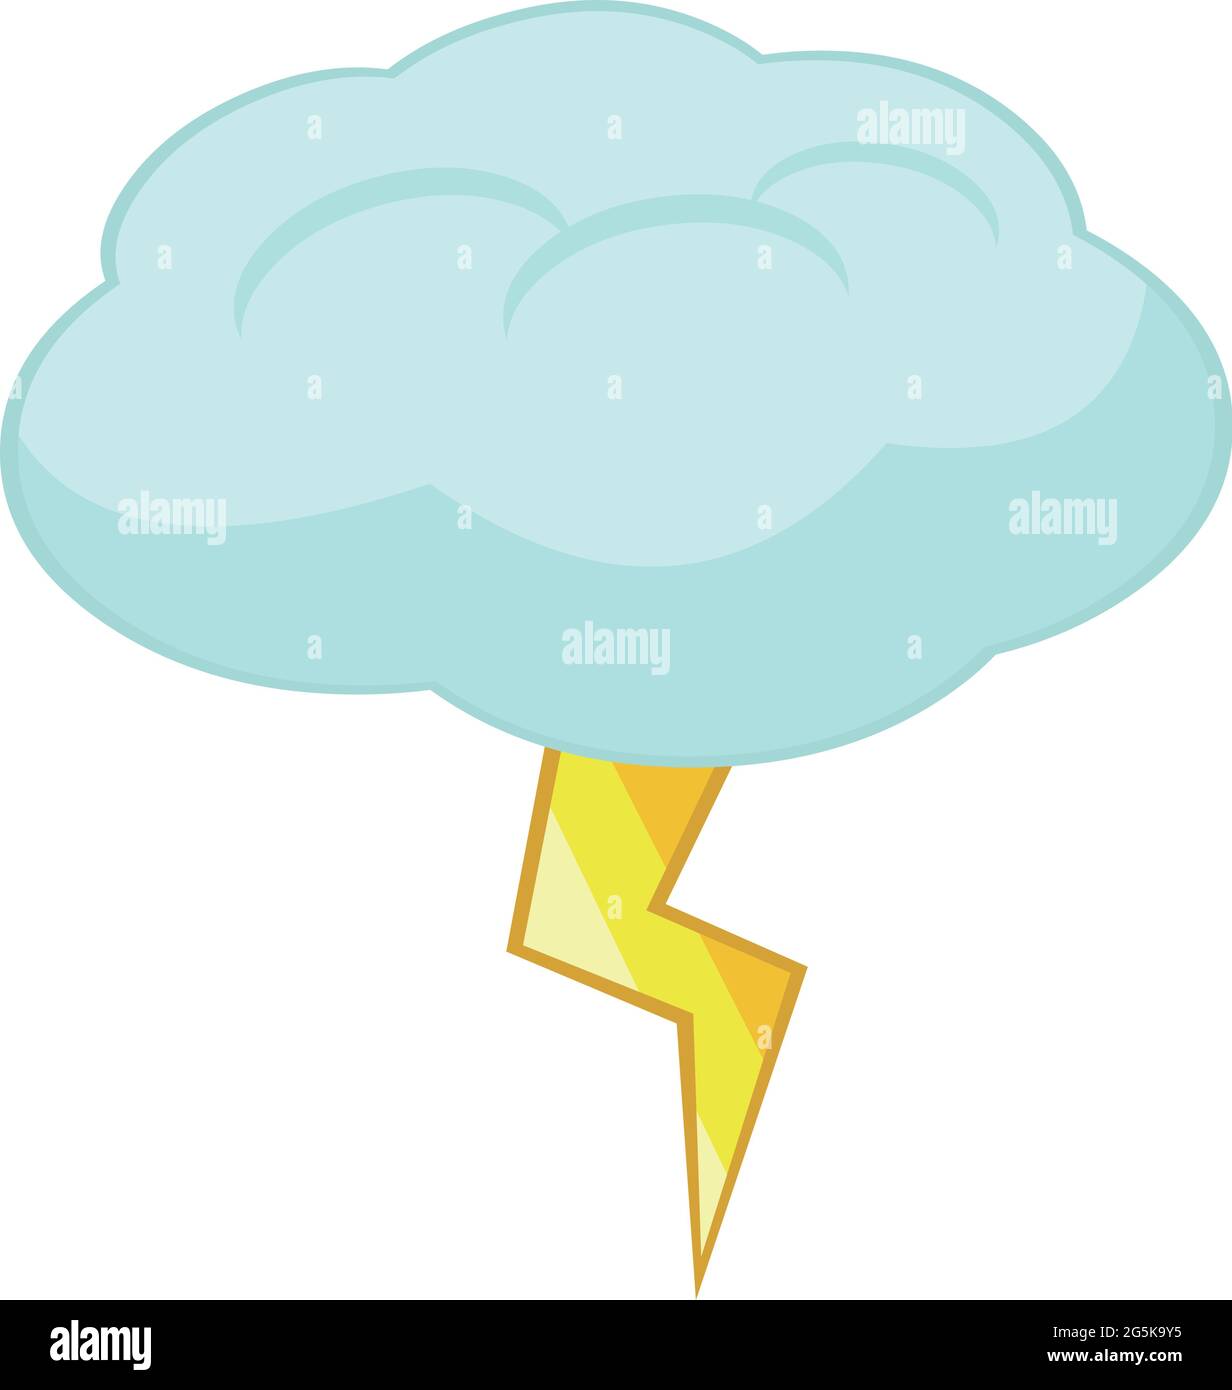 Émoticone vecteur illustration d'un nuage et de la foudre, prévision de la tempête électrique Illustration de Vecteur